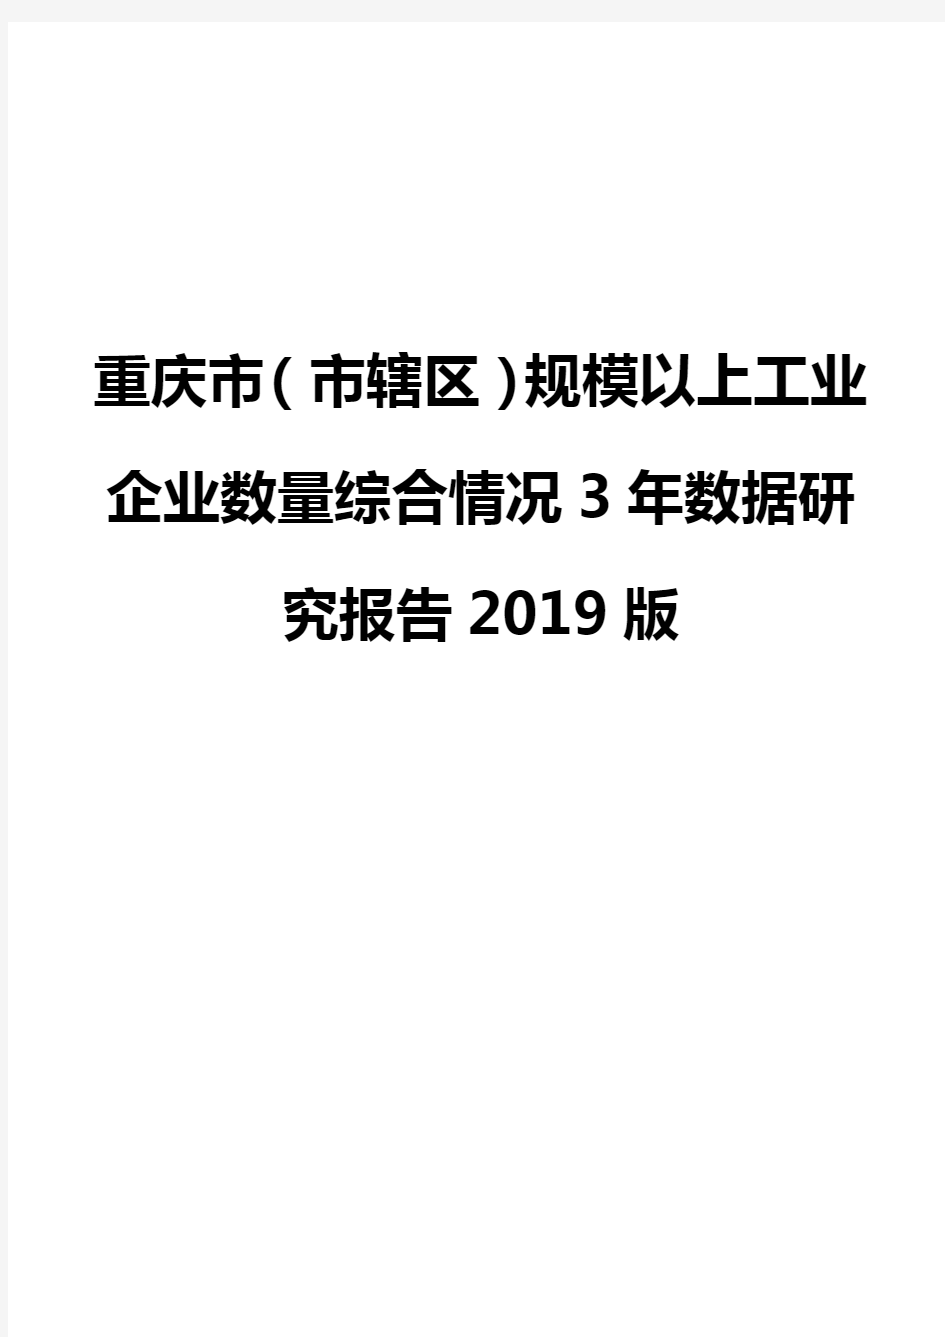 重庆市(市辖区)规模以上工业企业数量综合情况3年数据研究报告2019版